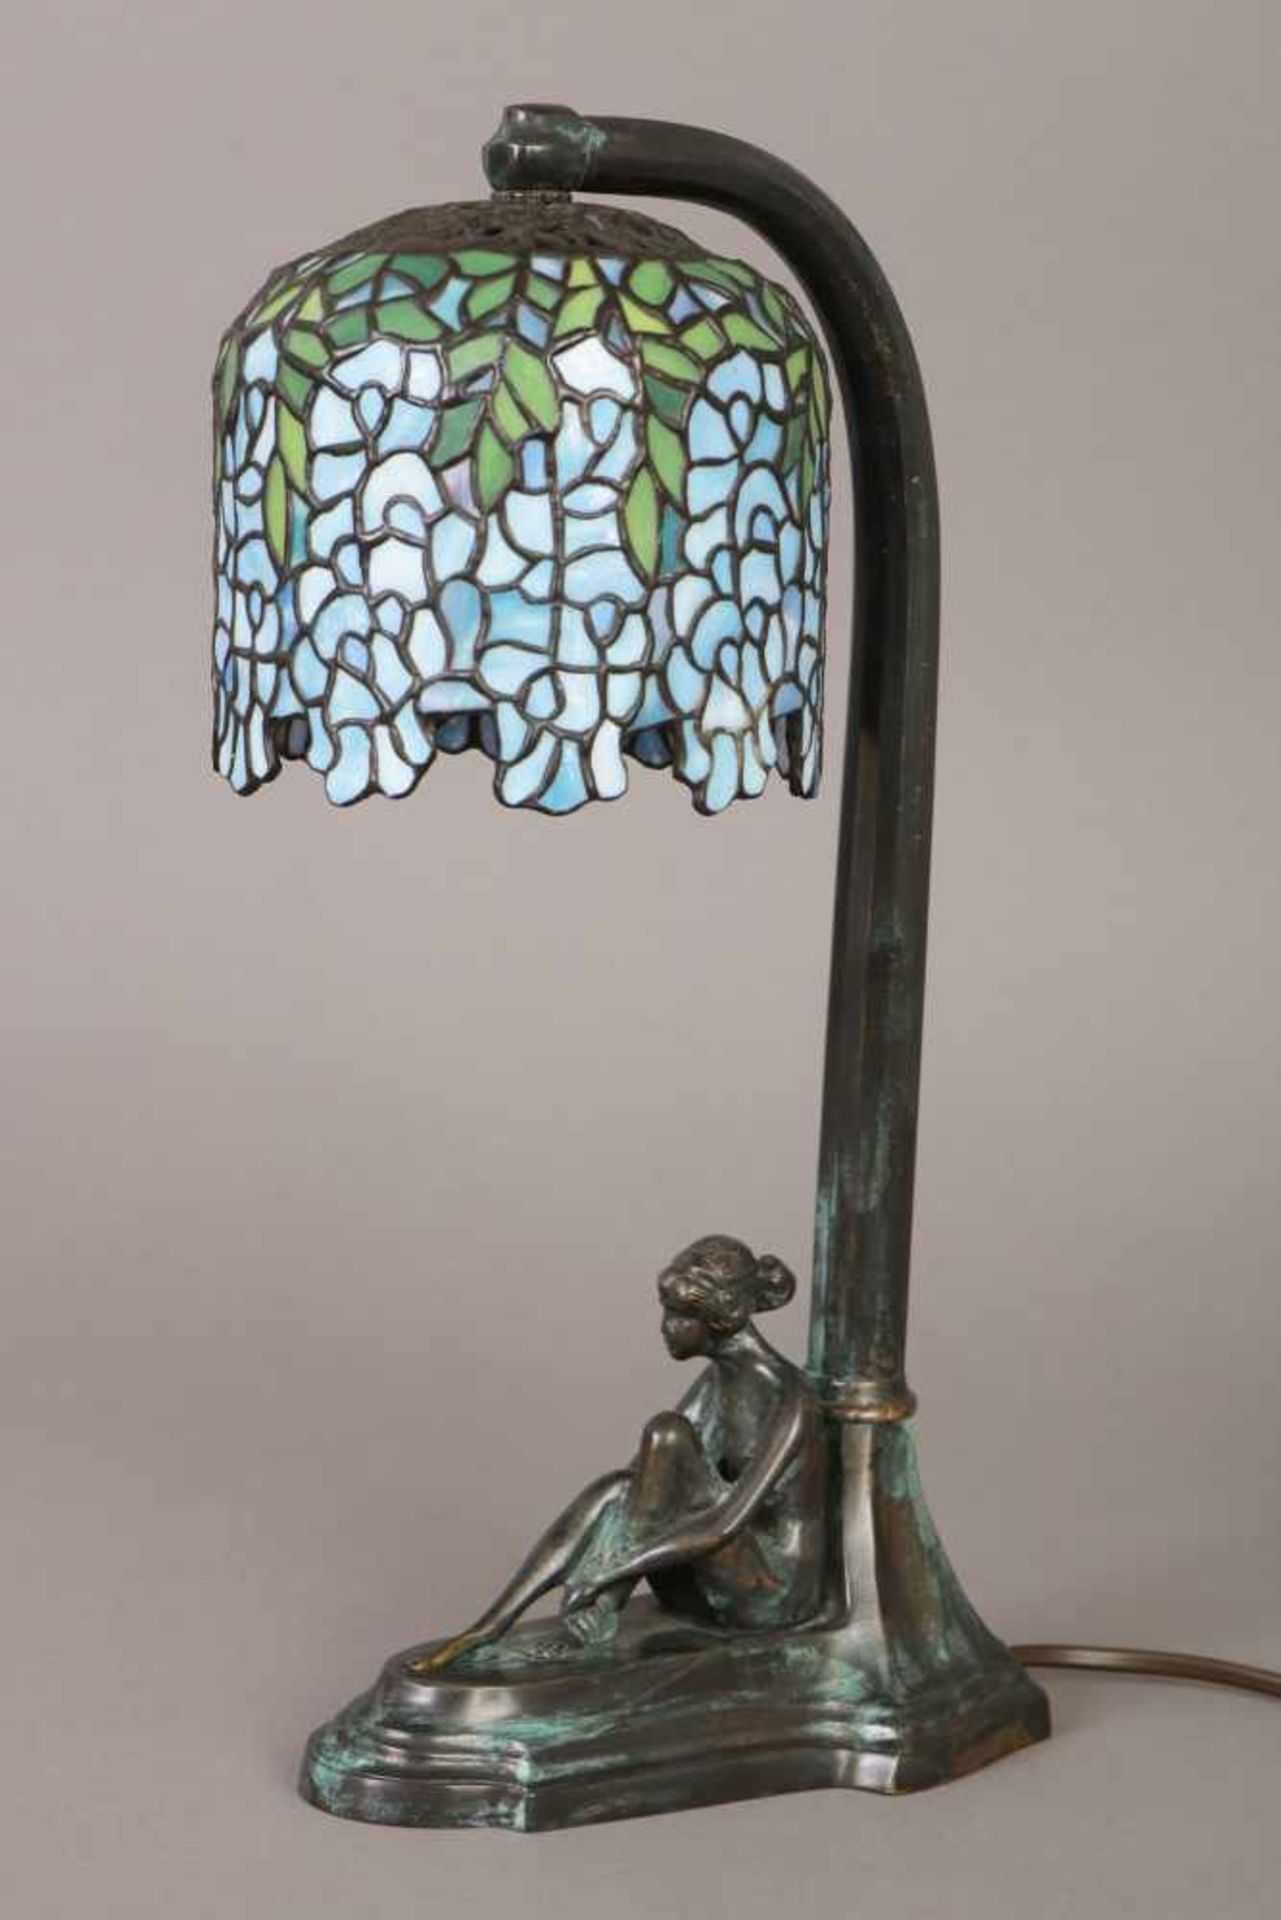 Tischlampe im Stile des Jugendstil2. Hälfte 20. Jhdt., Fuß Bronze, dunkel und grün patiniert, mit